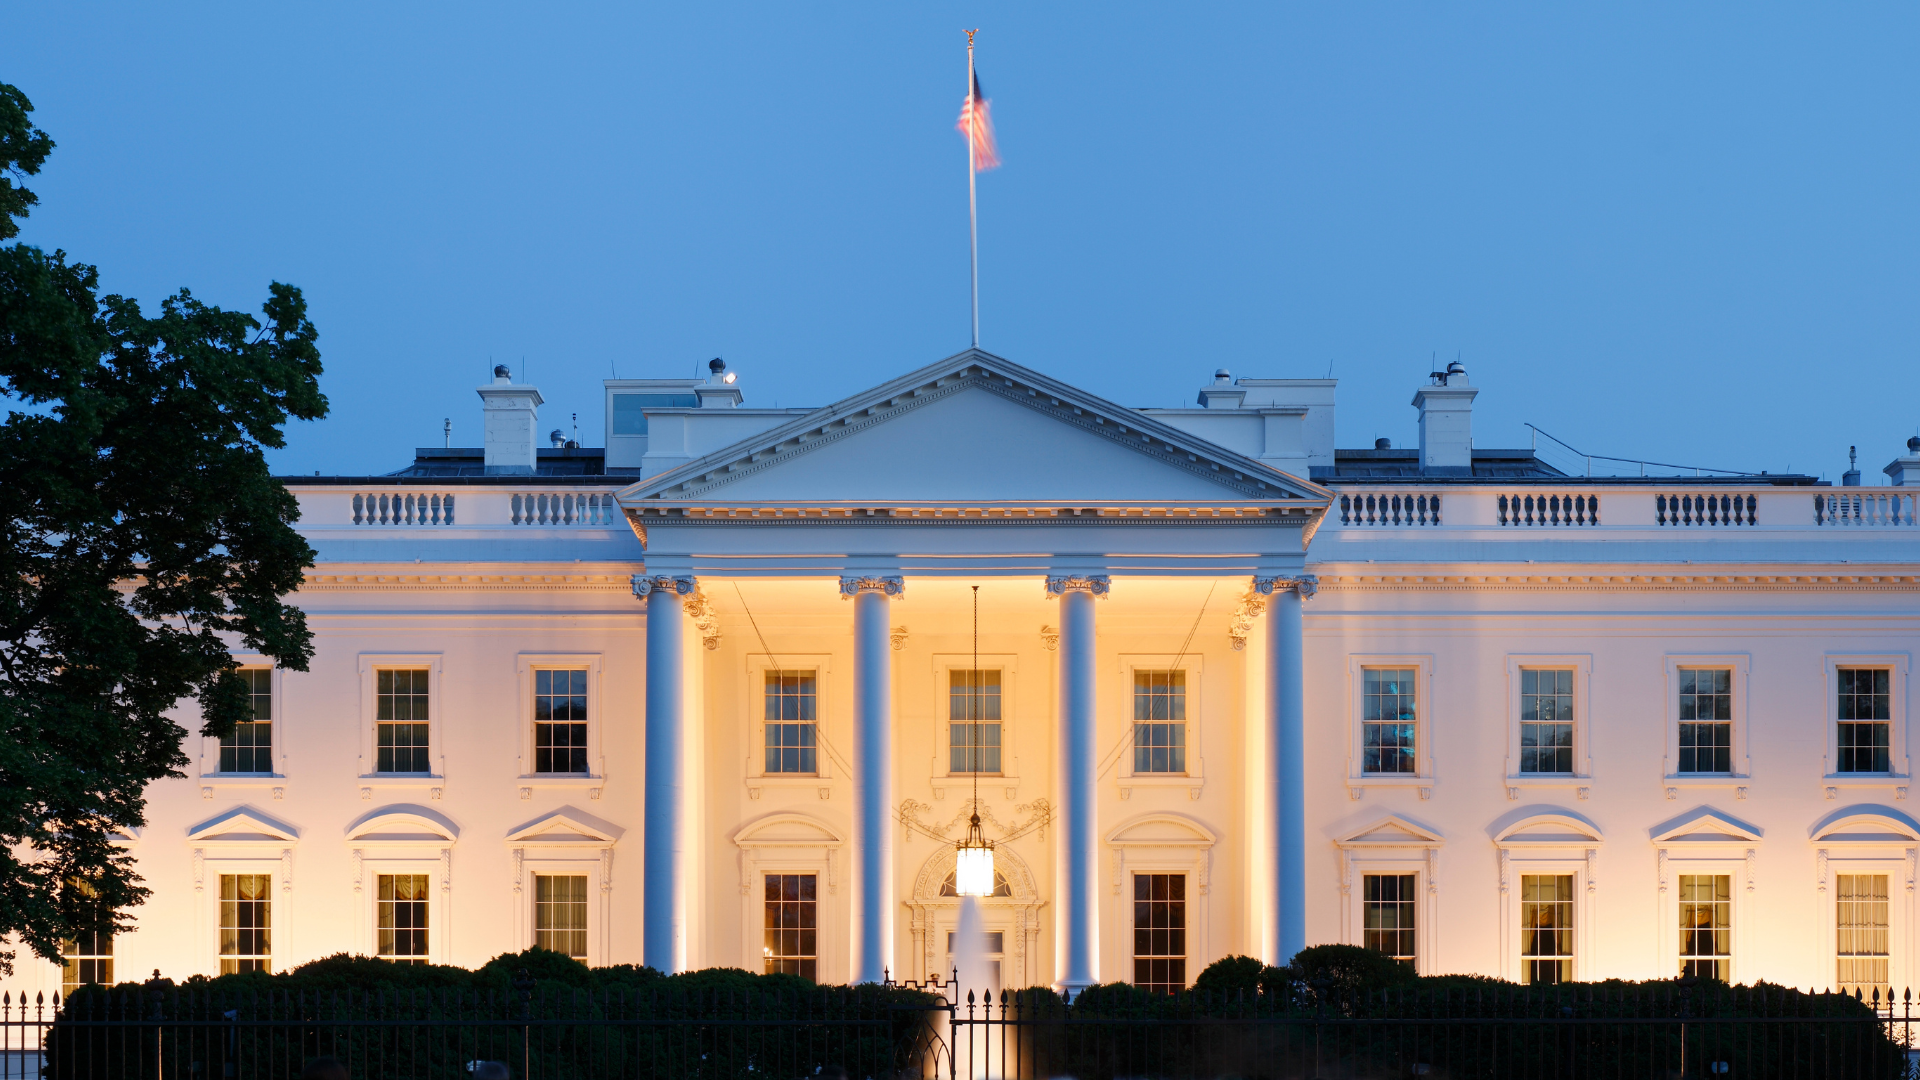 White House at dusk